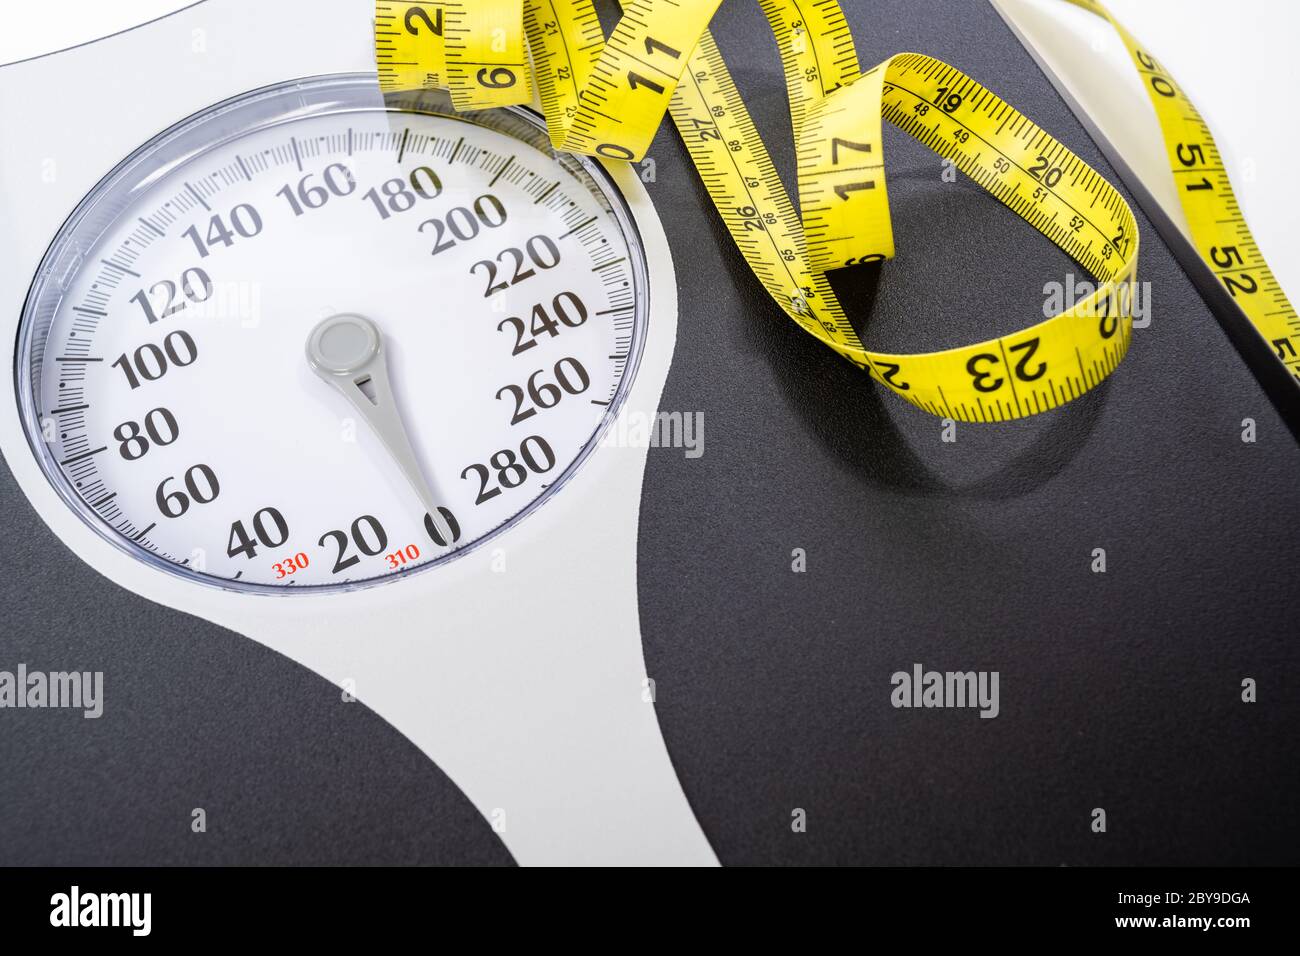 Balanza de medición y cinta métrica de dial de peso humano Foto de stock